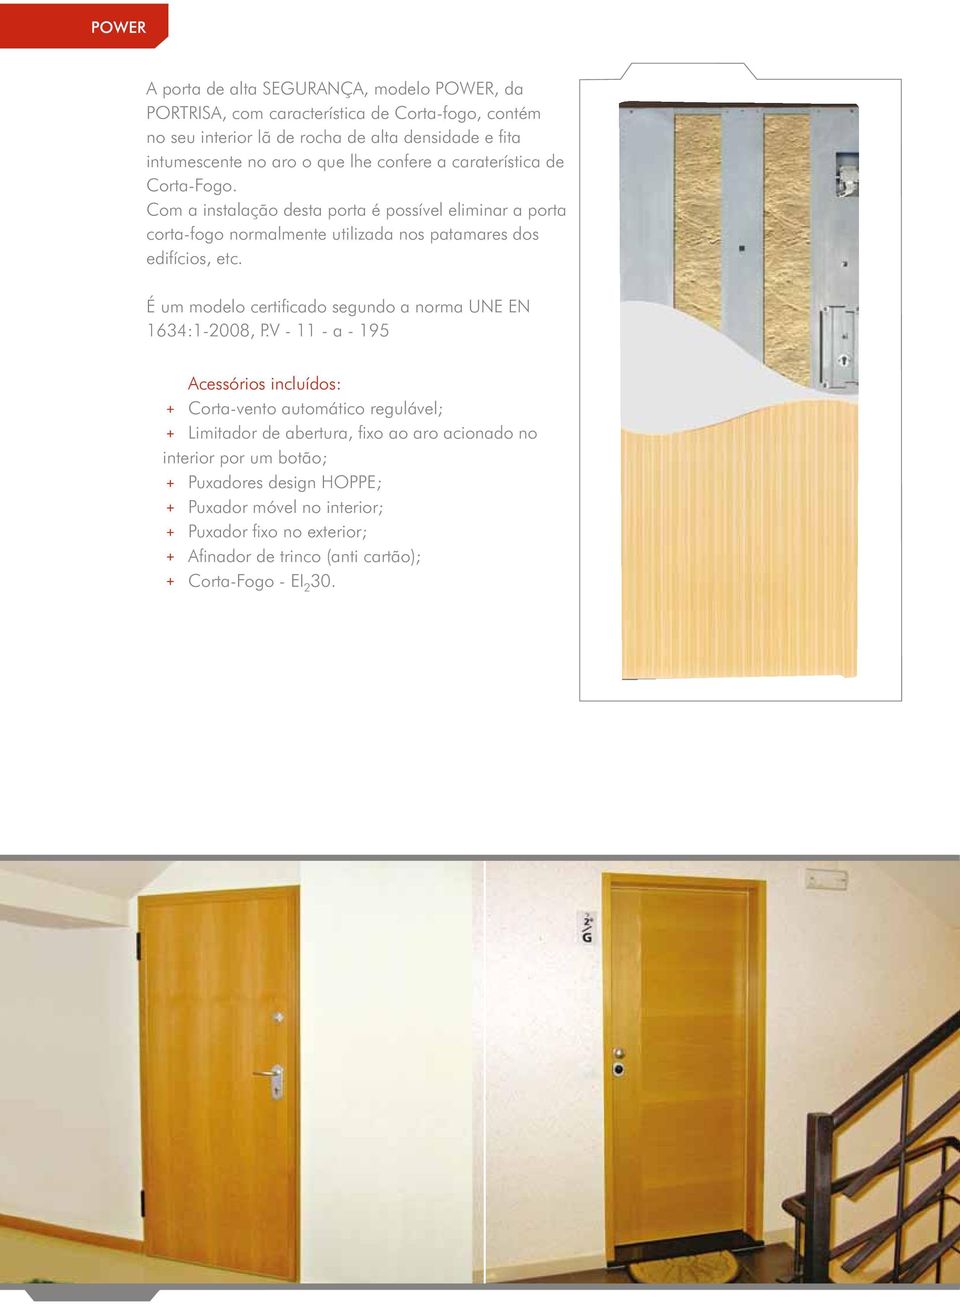 Com a instalação desta porta é possível eliminar a porta corta-fogo normalmente utilizada nos patamares dos edifícios, etc.